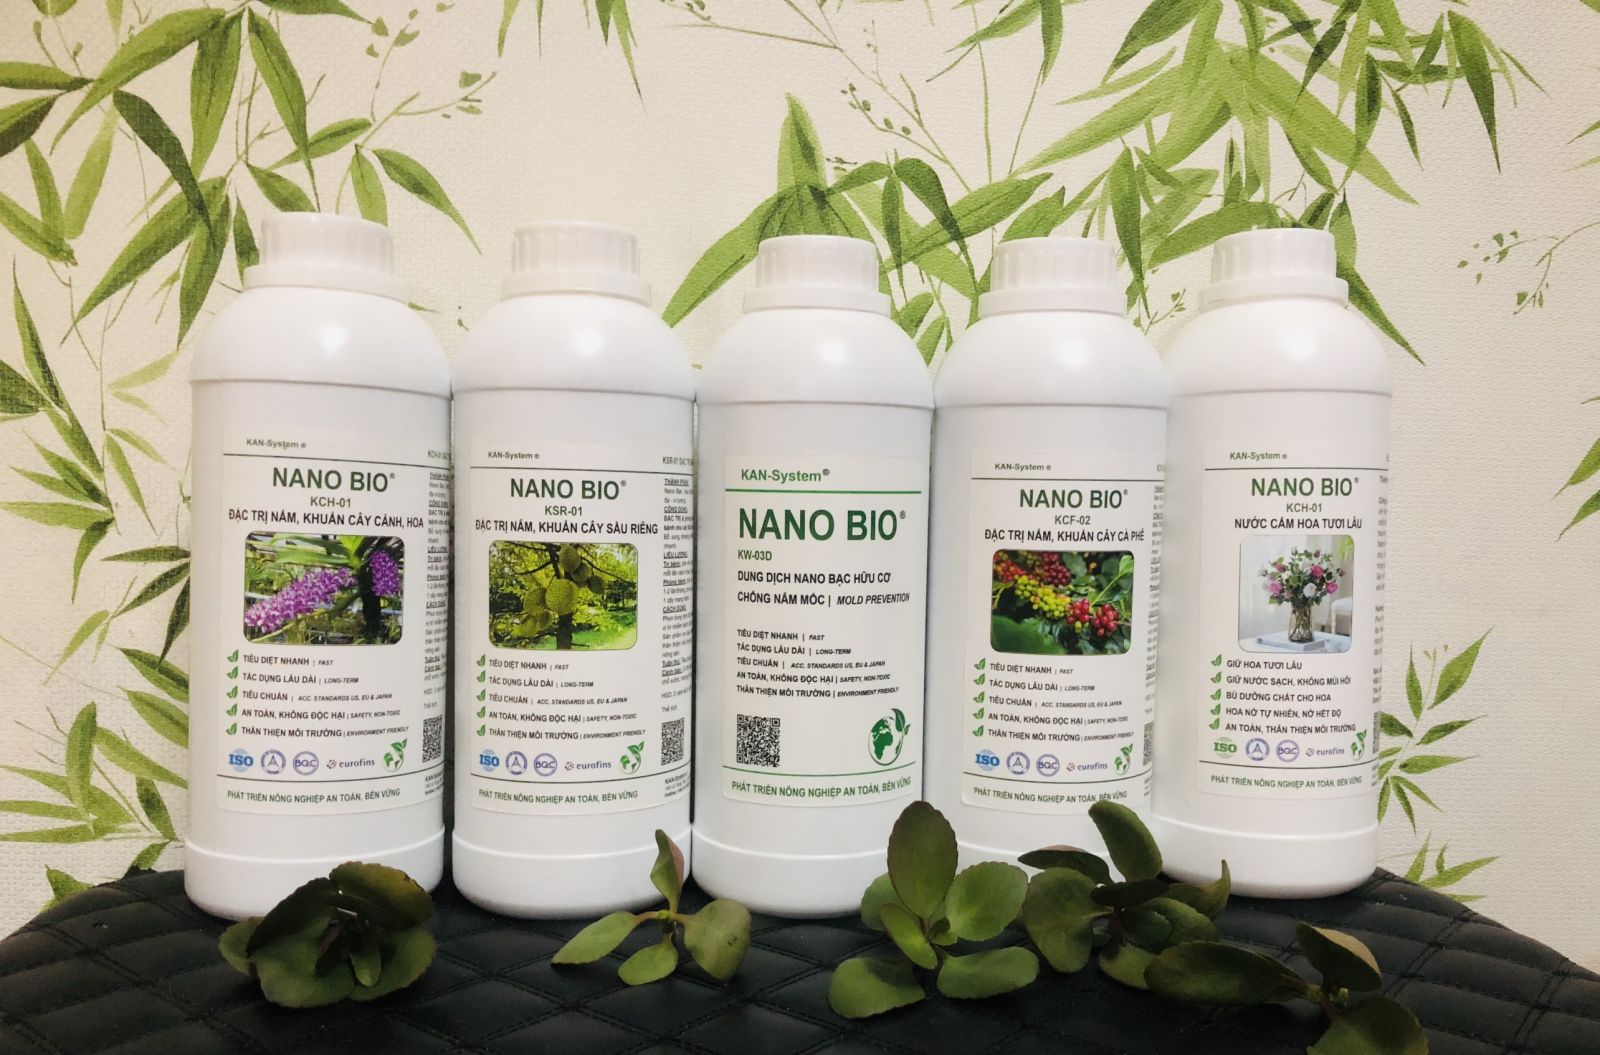 NANO BIO: ĐẶC TRỊ & phòng chống bệnh do nấm, vi khuẩn gây bệnh cho cây Xoài